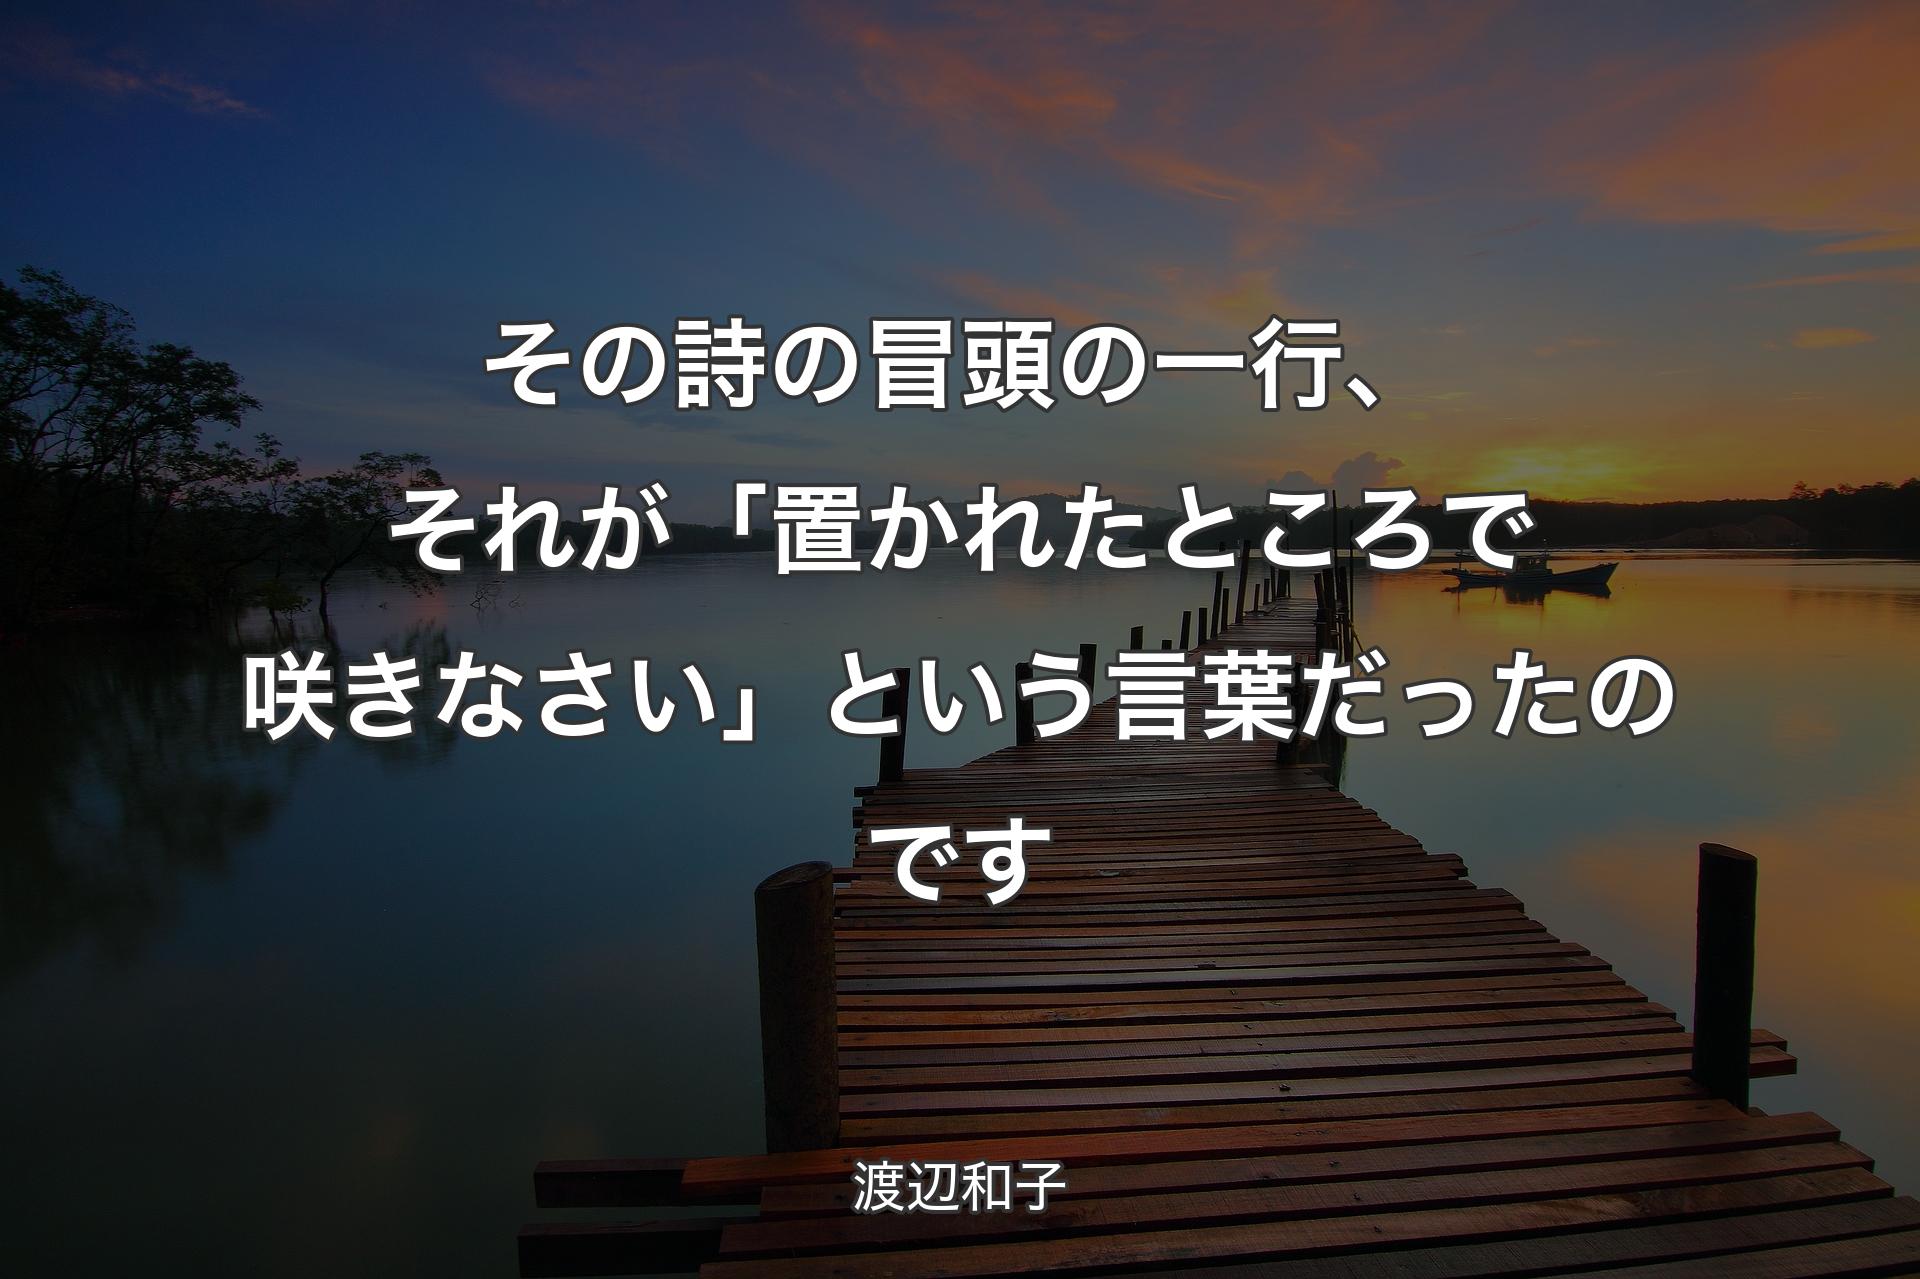 【背景3】その詩の冒頭の一行、それが「置かれたところで咲きなさい」という言葉だったのです - 渡辺和子